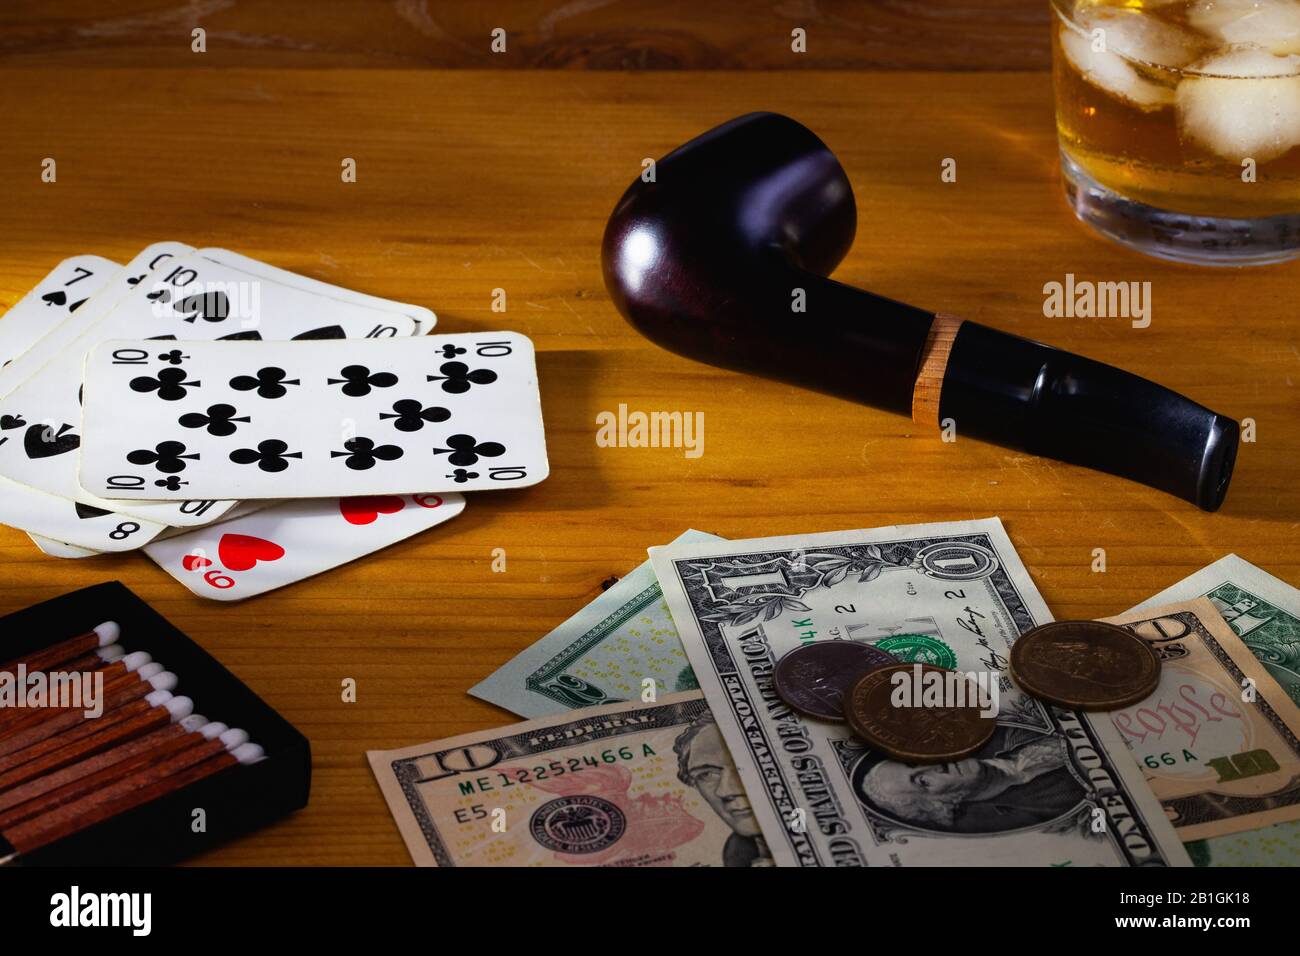 Jeux de hasard - tuyau de tabac , cartes à jouer, whisky écossais et billets en dollars américains sur la table en bois Banque D'Images